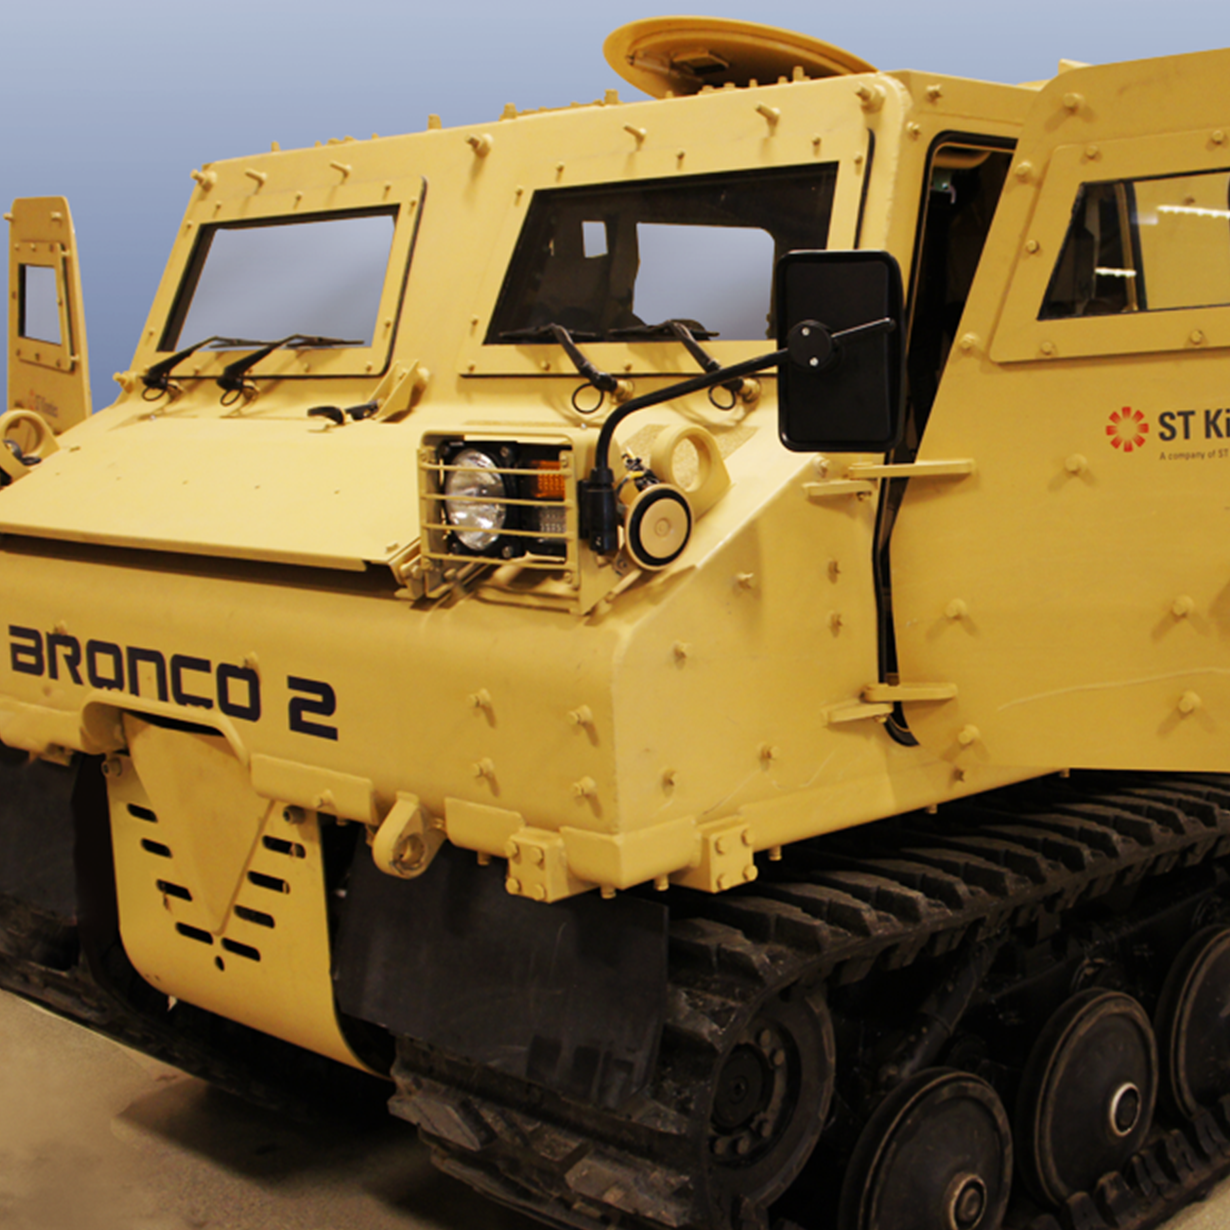 Billede af et militærkøretøj, der bruges til minerydning og troppetransport